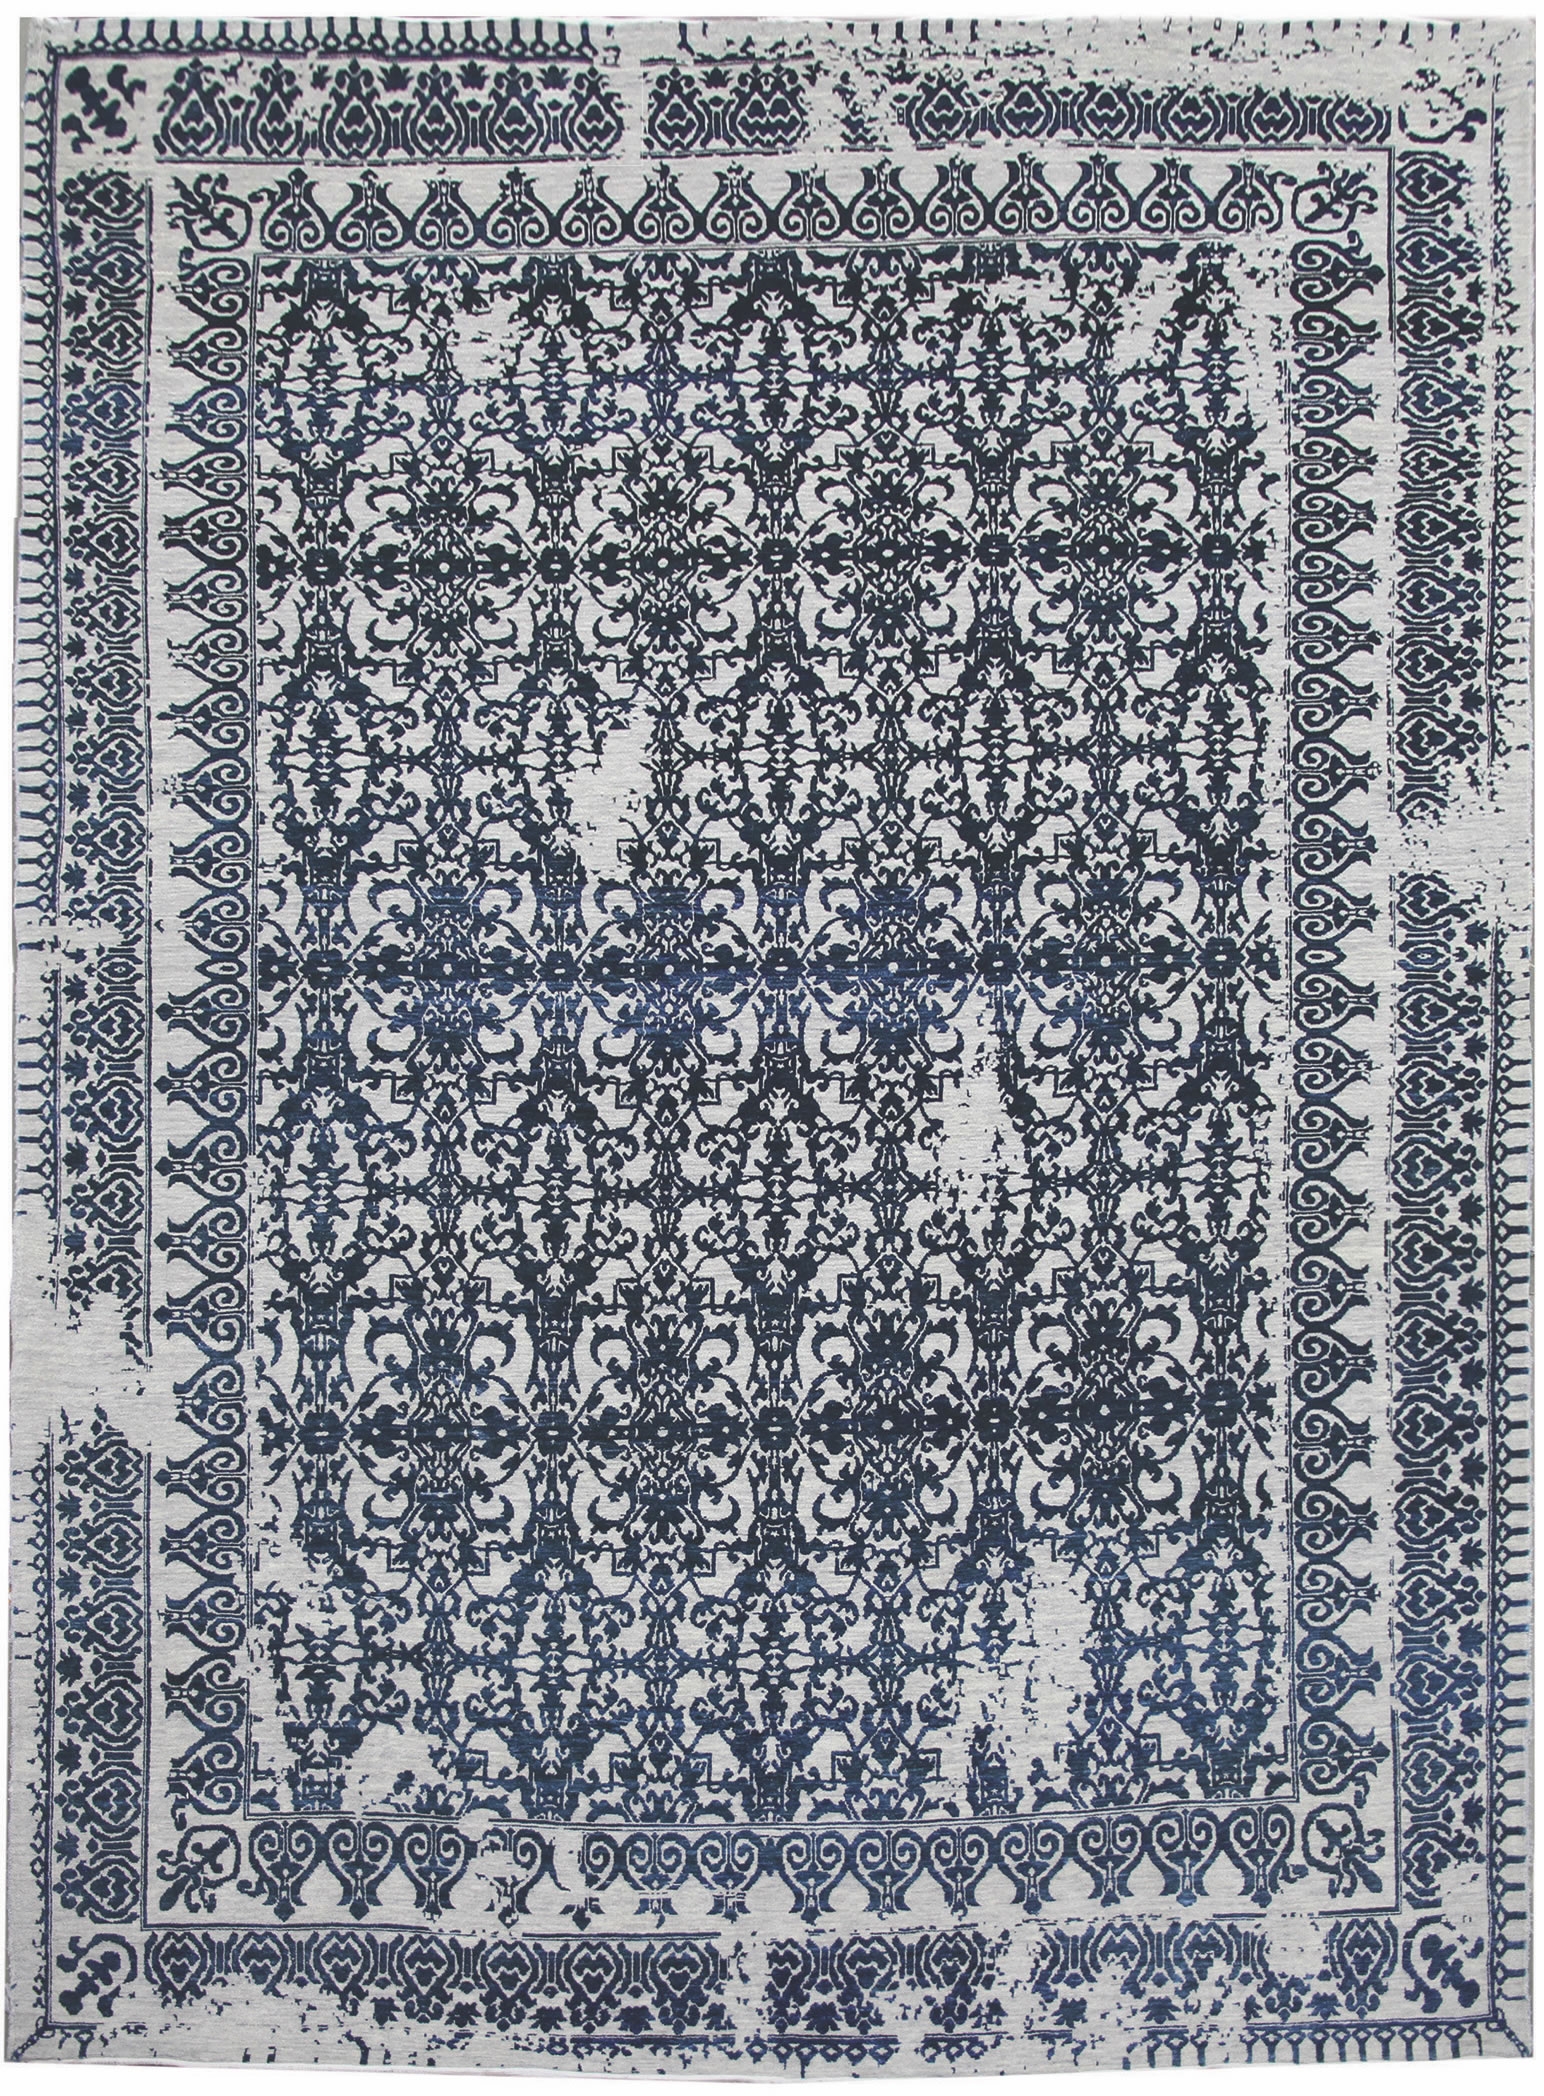 Ručne viazaný kusový koberec Diamond DC-JK 7 Silver / denim - 365x457 cm Diamond Carpets koberce 